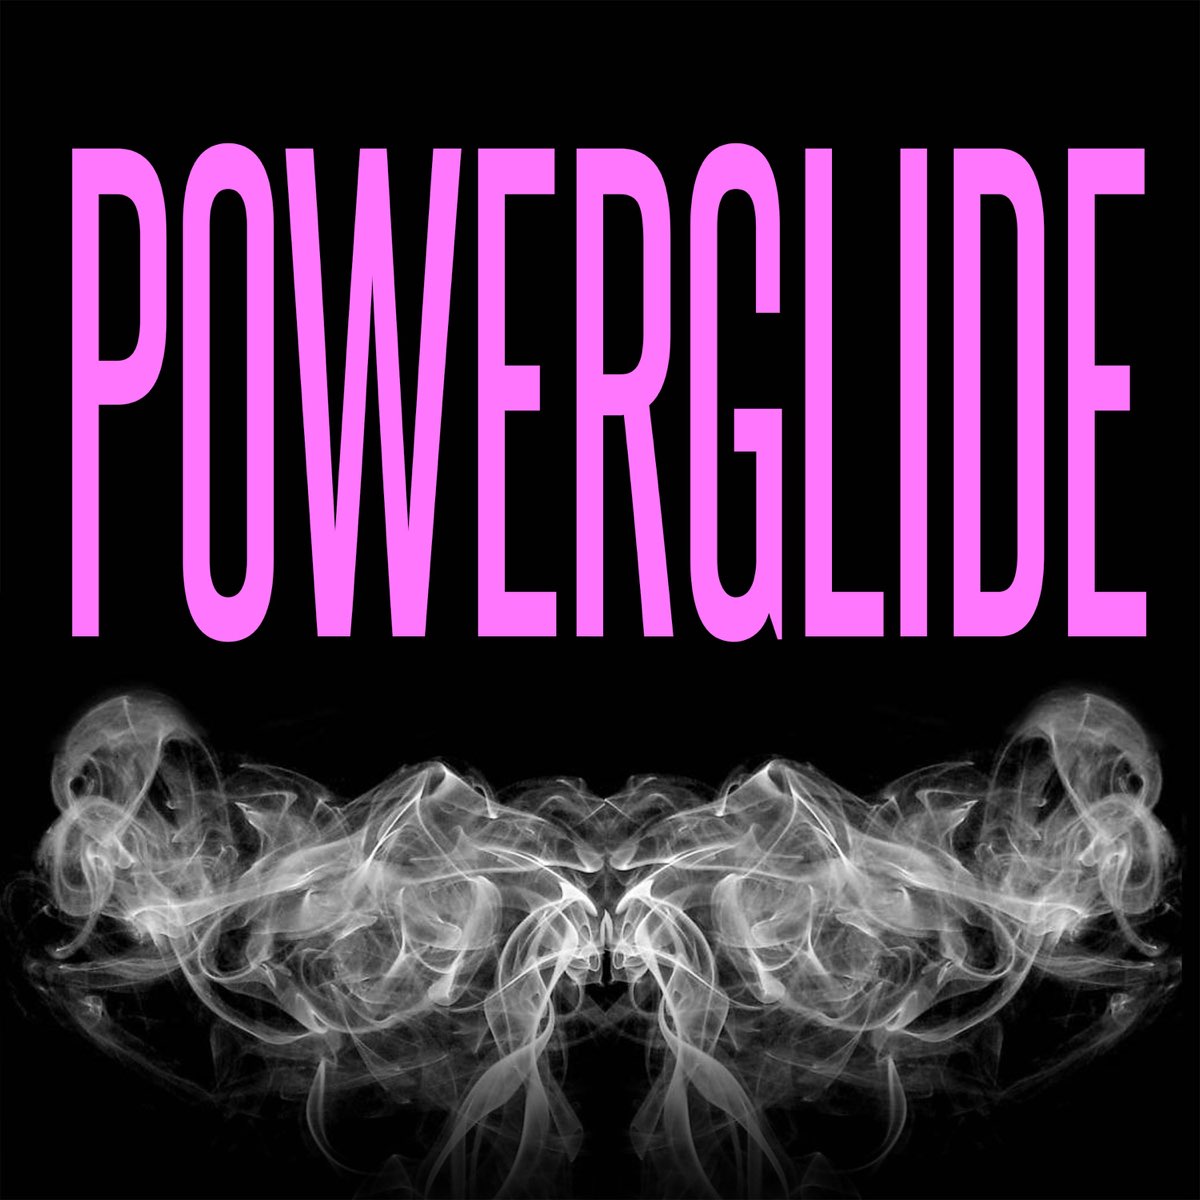 Powerglide (Originally Performed by Rae Sremmurd, Swae Lee, Slim Jxmmi &  Juicy J) [Instrumental] - Single by 3 Dope Brothas on Apple Music